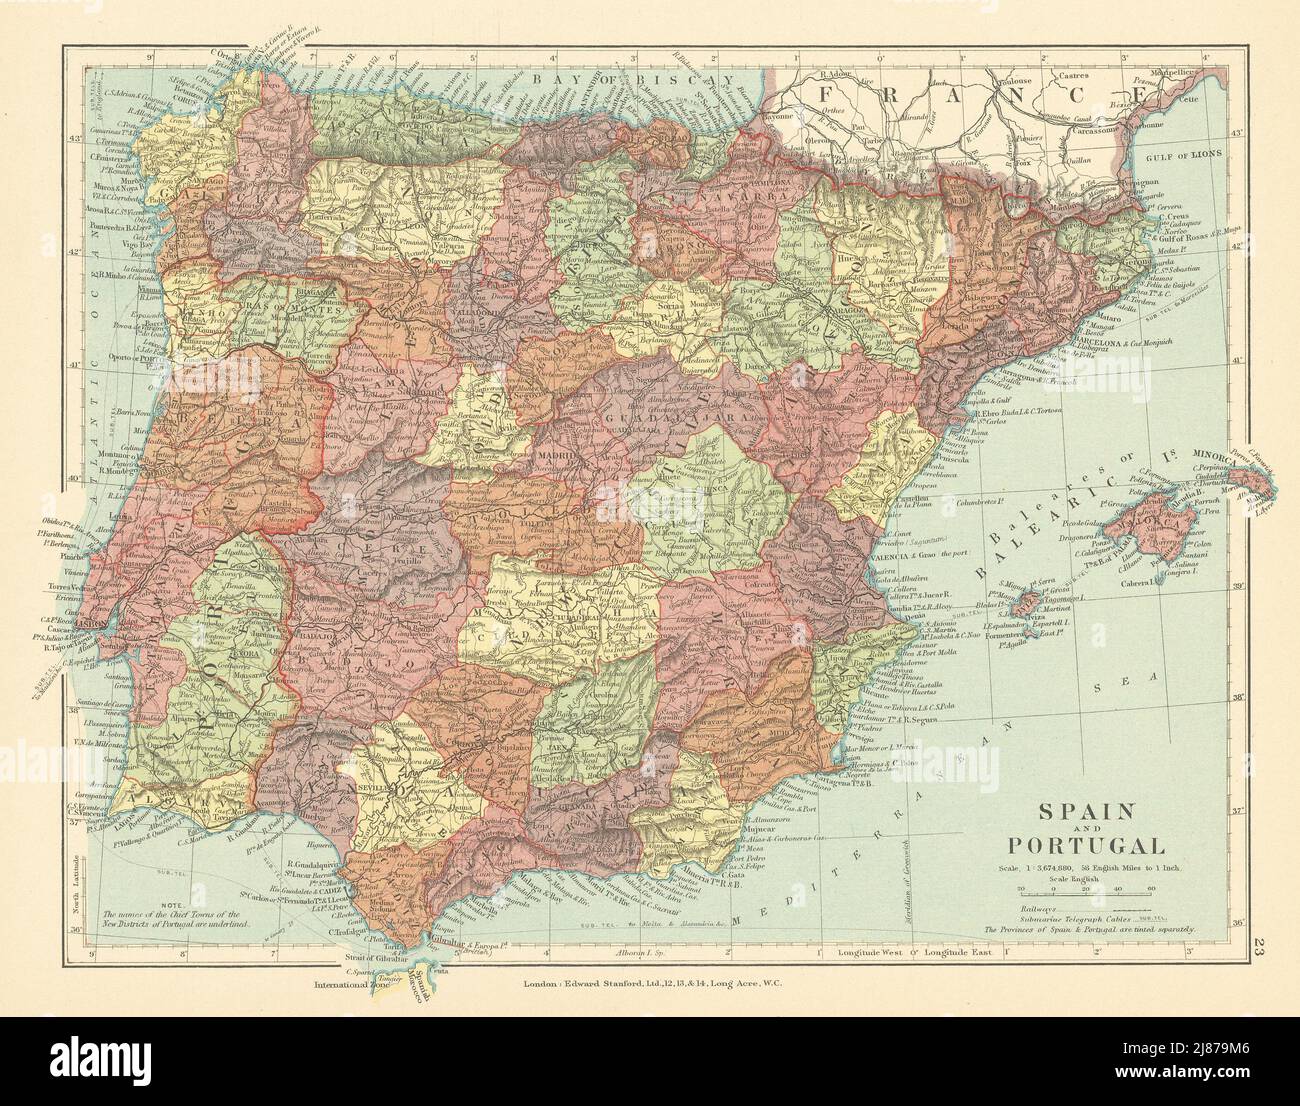 Spanien Und Portugal. Iberien. Internationale Zone Von Tanger. STANFORD c1925 alte Karte Stockfoto